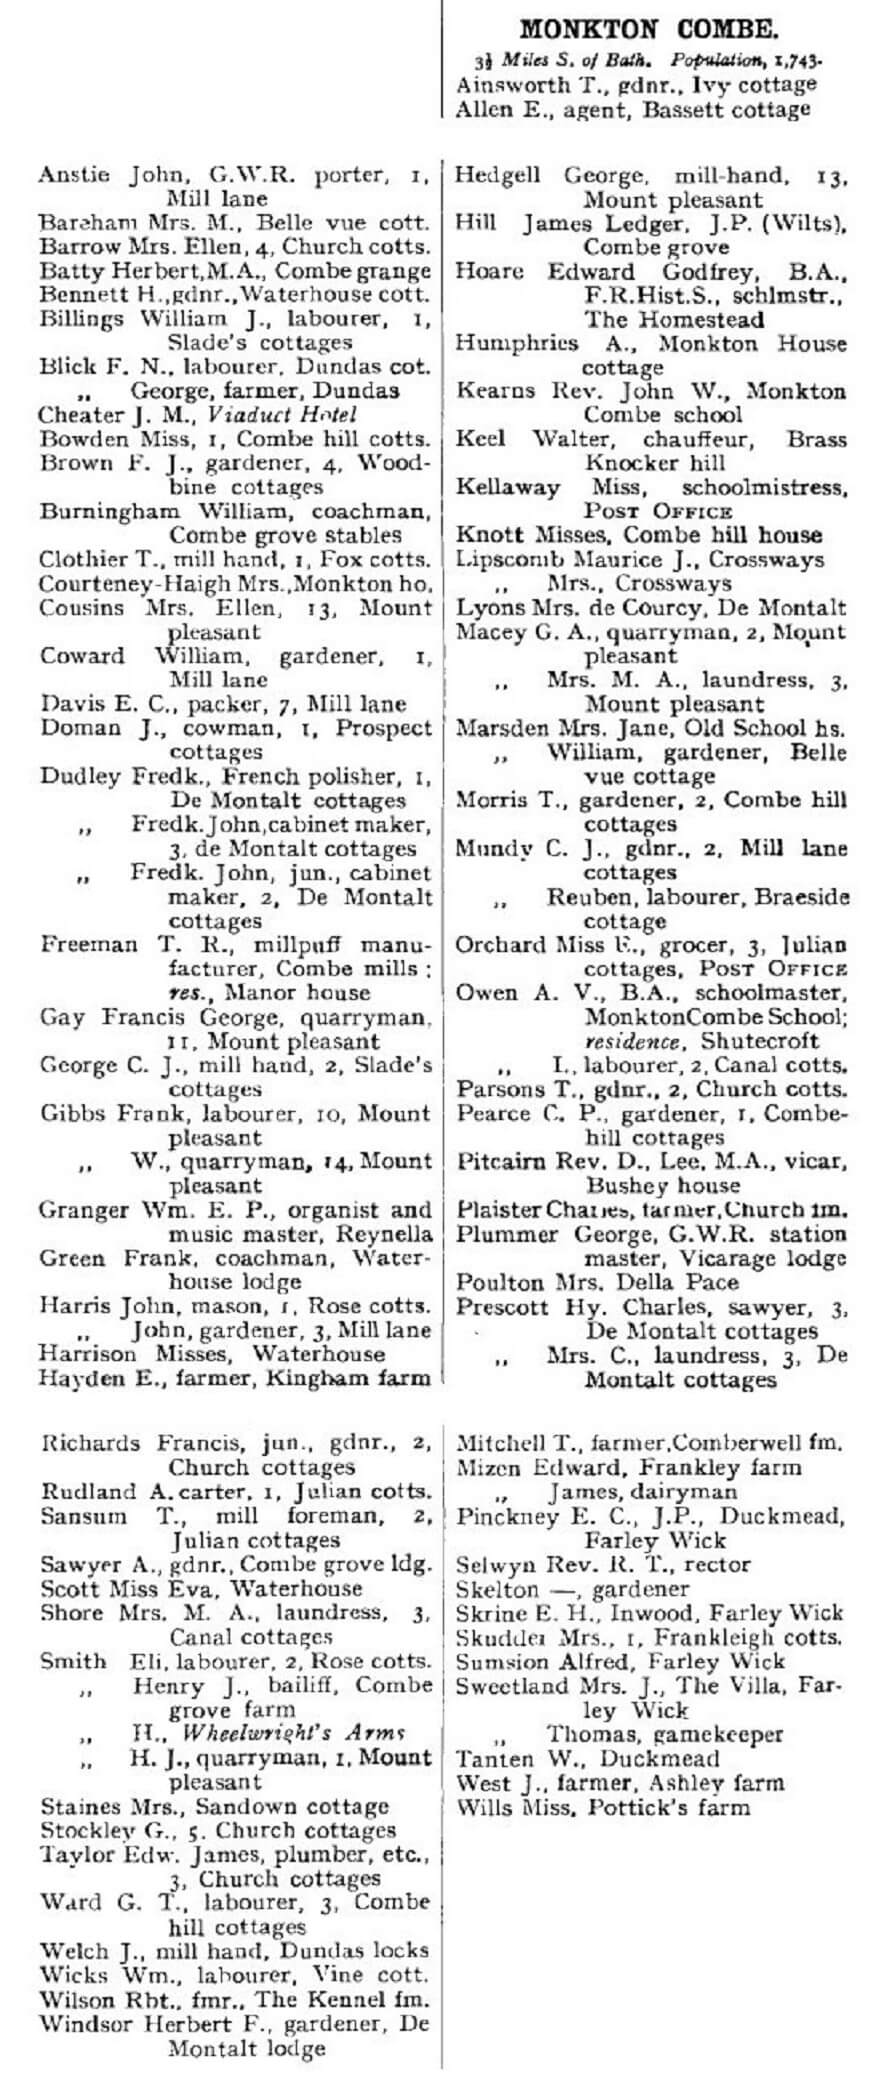 1911 po directory monkton combe